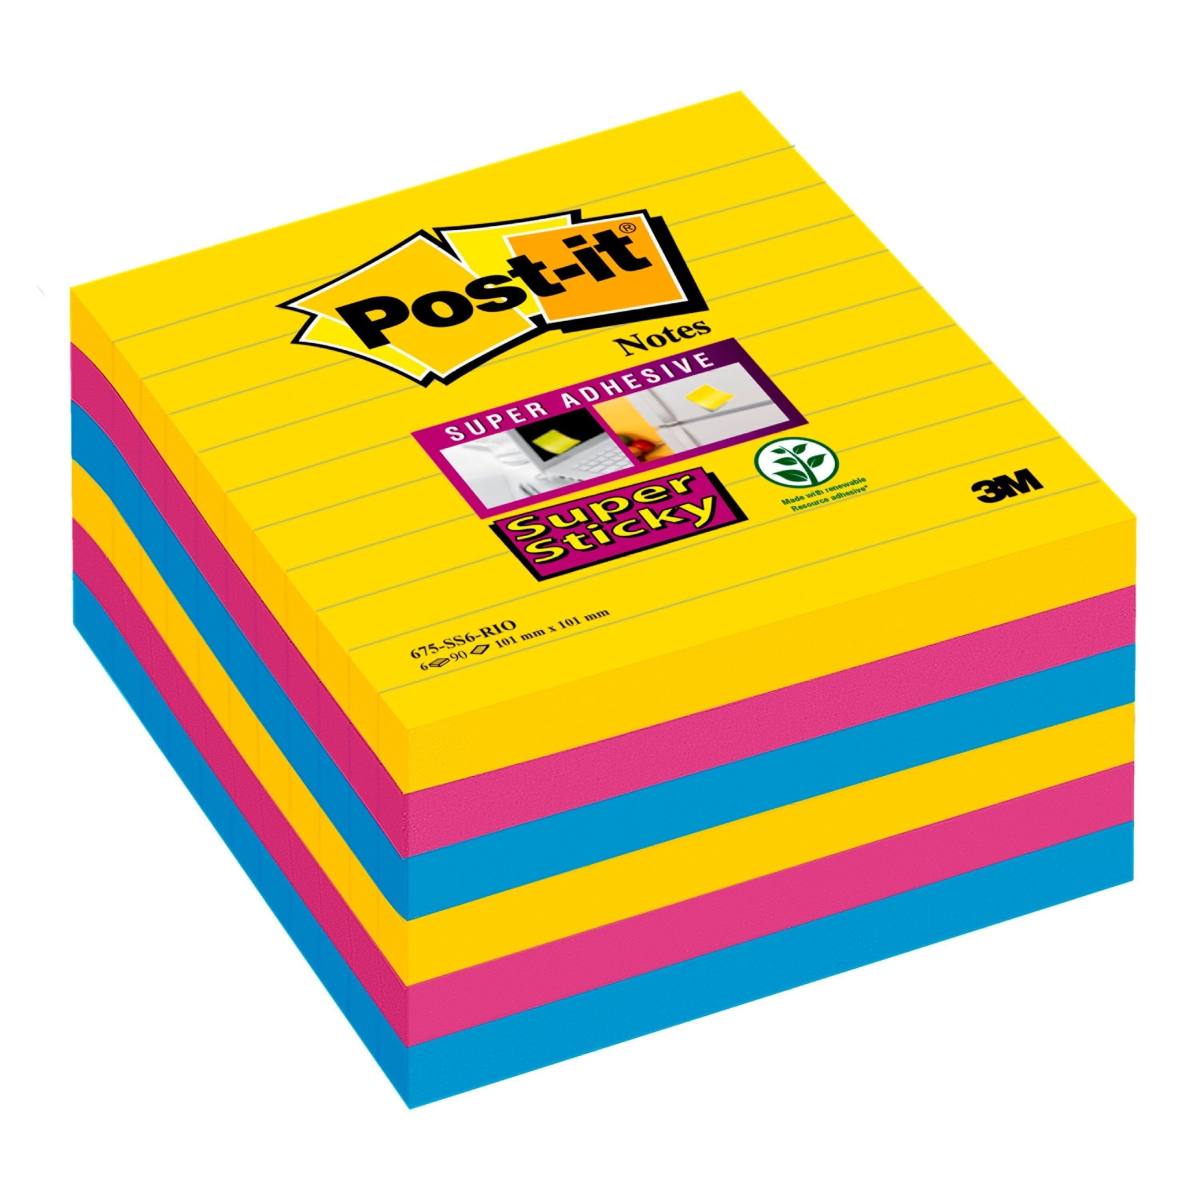 3M Post-it Super Sticky Notes 675-S6R, 6 blocs de 90 hojas, Colección Río de Janeiro: ultra-amarillo, -azul, -rosa, 101 mm x 101 mm, forradas, certificado PEFC